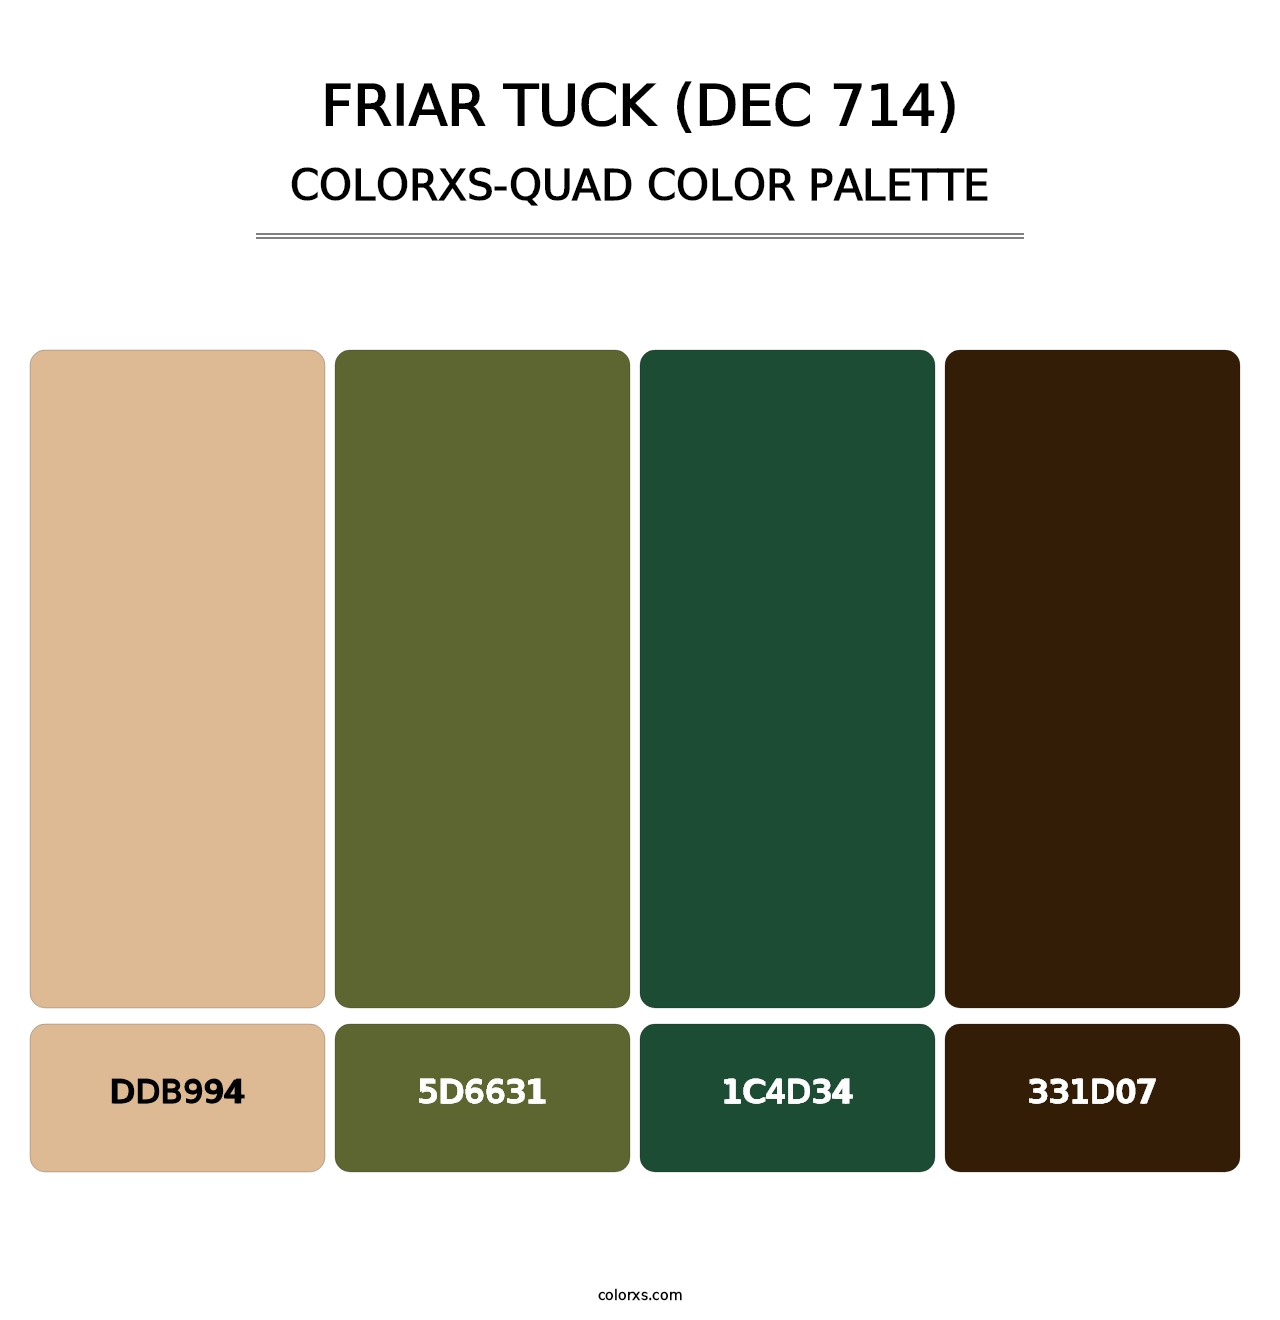 Friar Tuck (DEC 714) - Colorxs Quad Palette